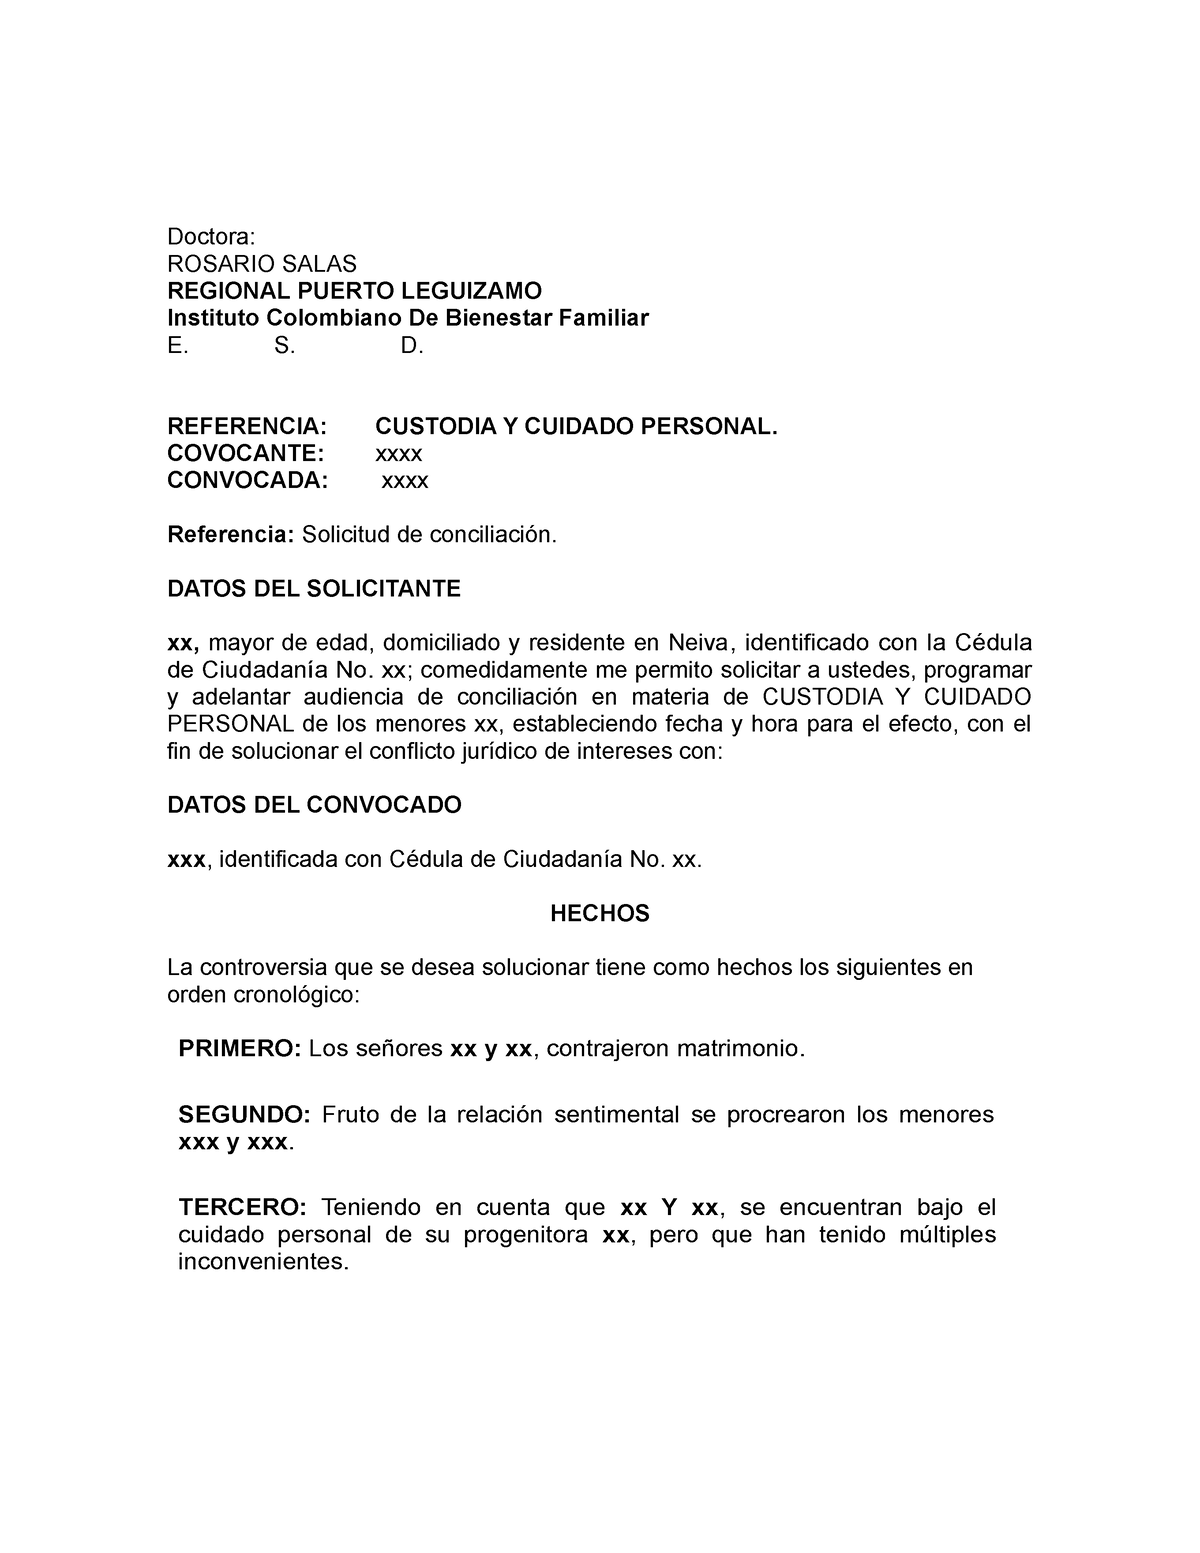 Modelo Solicitud conciliación - ICBF - Doctora: ROSARIO SALAS REGIONAL  PUERTO LEGUIZAMO Instituto - Studocu